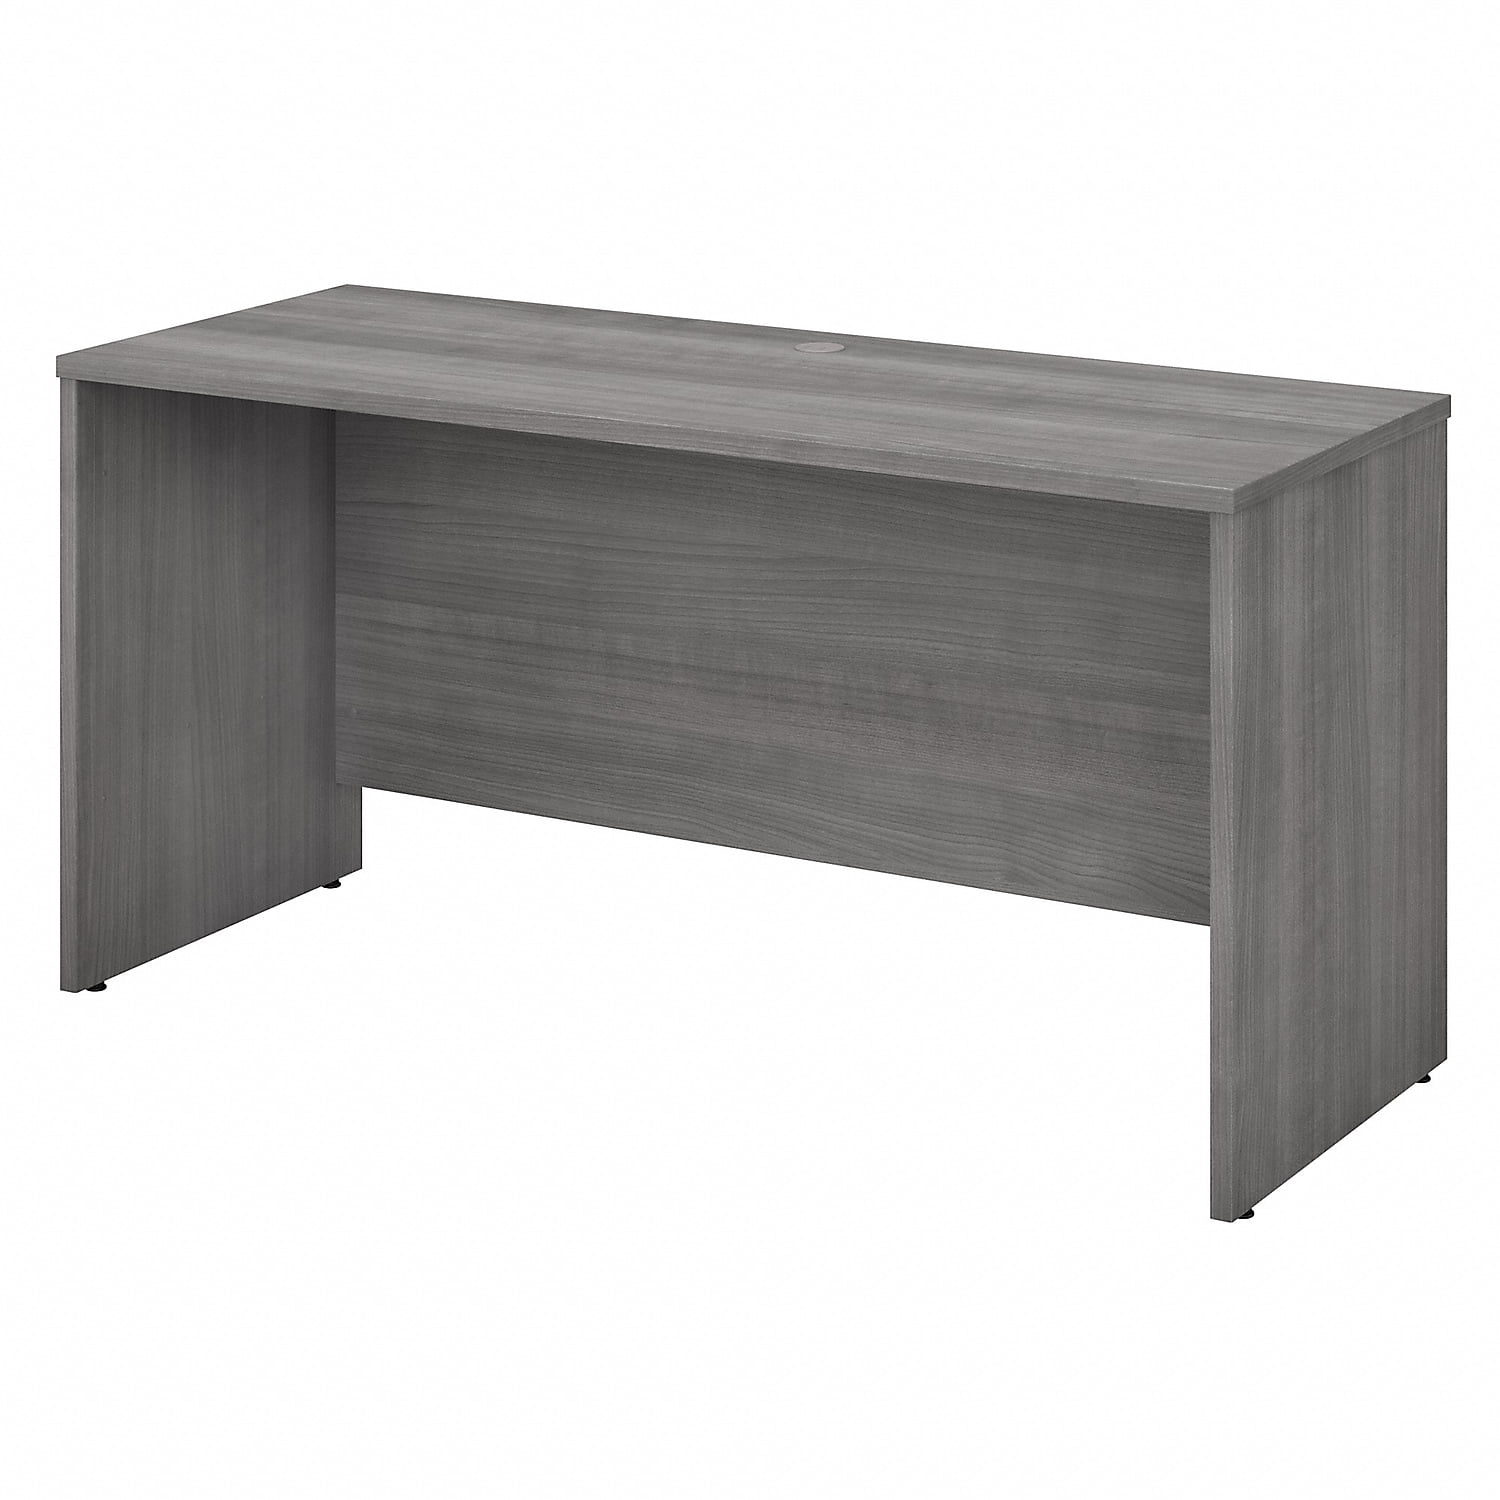 Picture of Bush Business Furniture SCD360PG 60 x 24 in. Studio C Credenza Desk - Platinum Gray